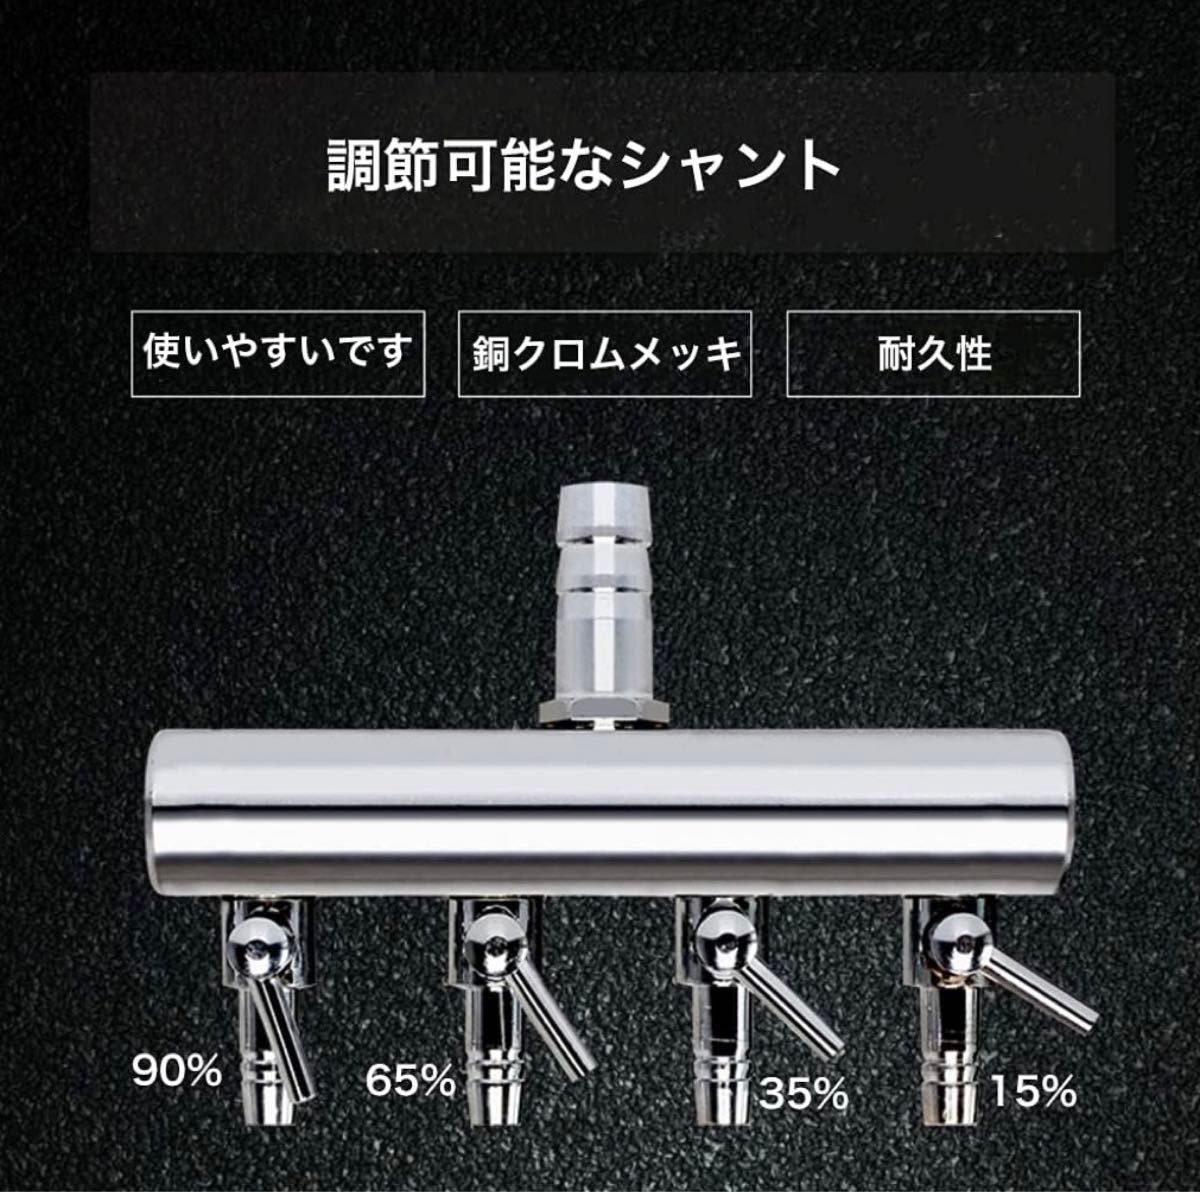 【新品】WanFengXue エアポンプ用アクセサリー エアーチューブ 4ウエー 360度回転 8mm-4mm 